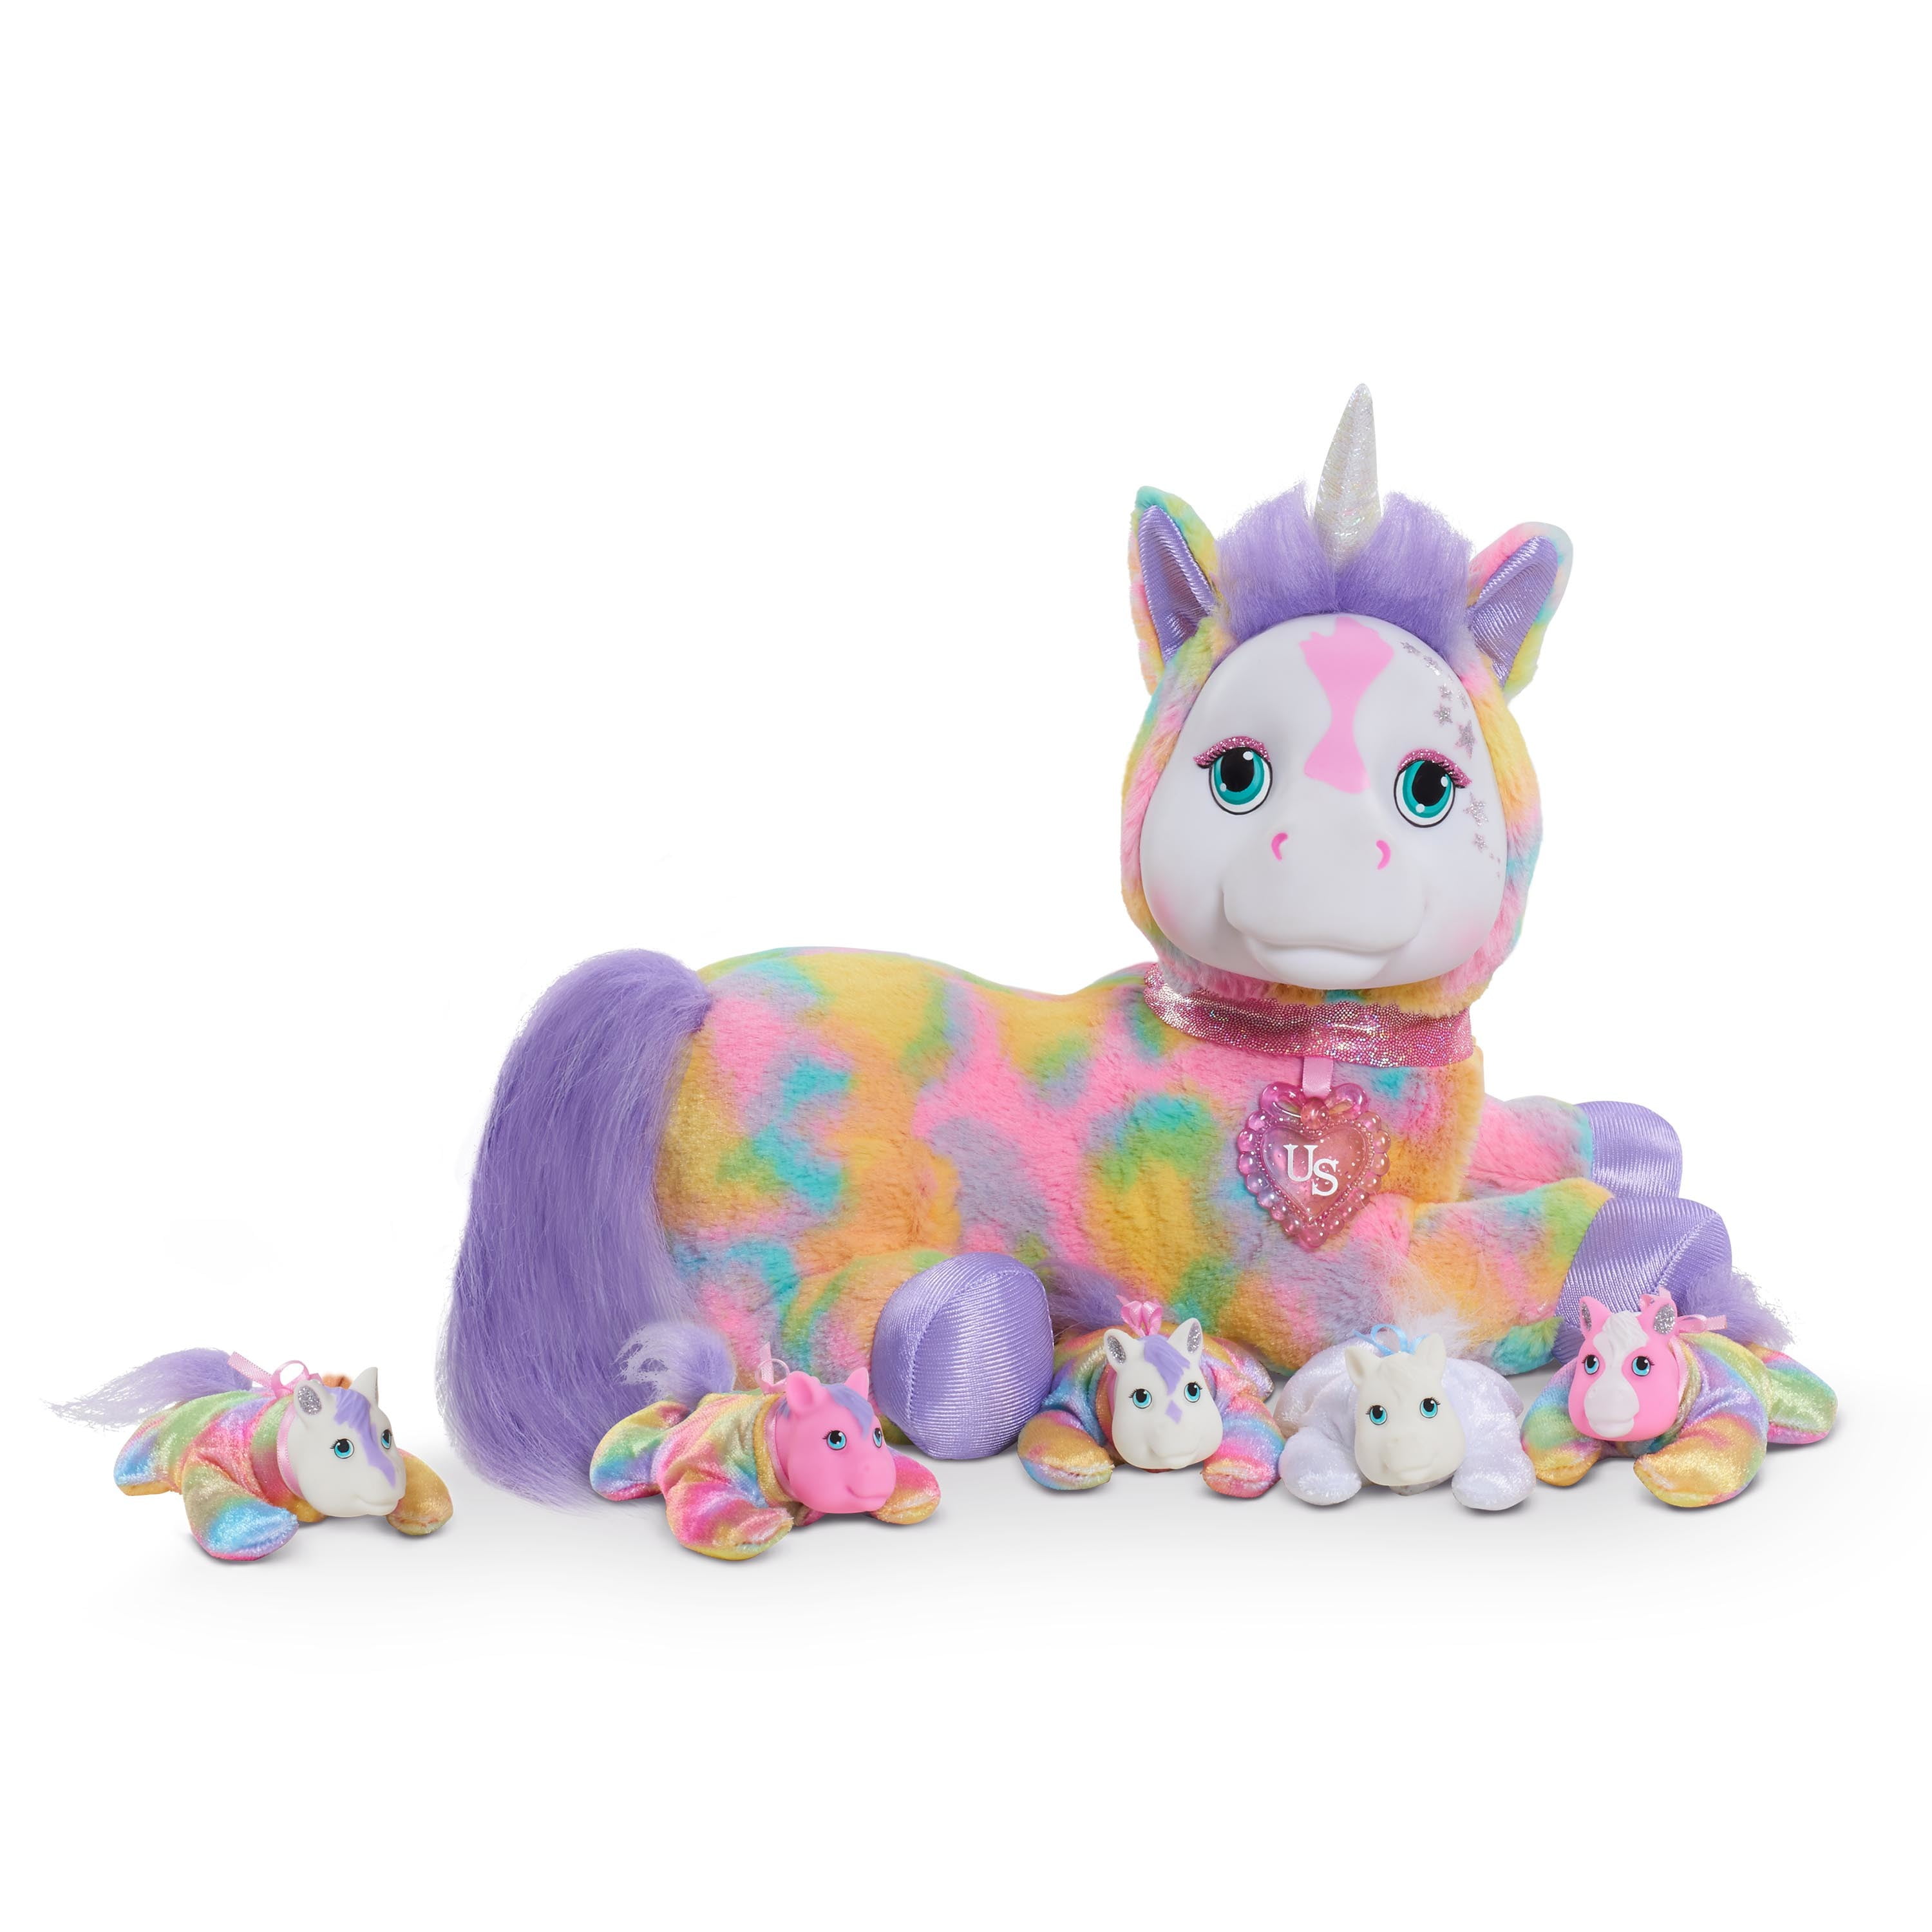 Soft Cute Plush Jumbo Large Unicorn Toys Stuffed Animal Doll Kids Xmas Gifts 